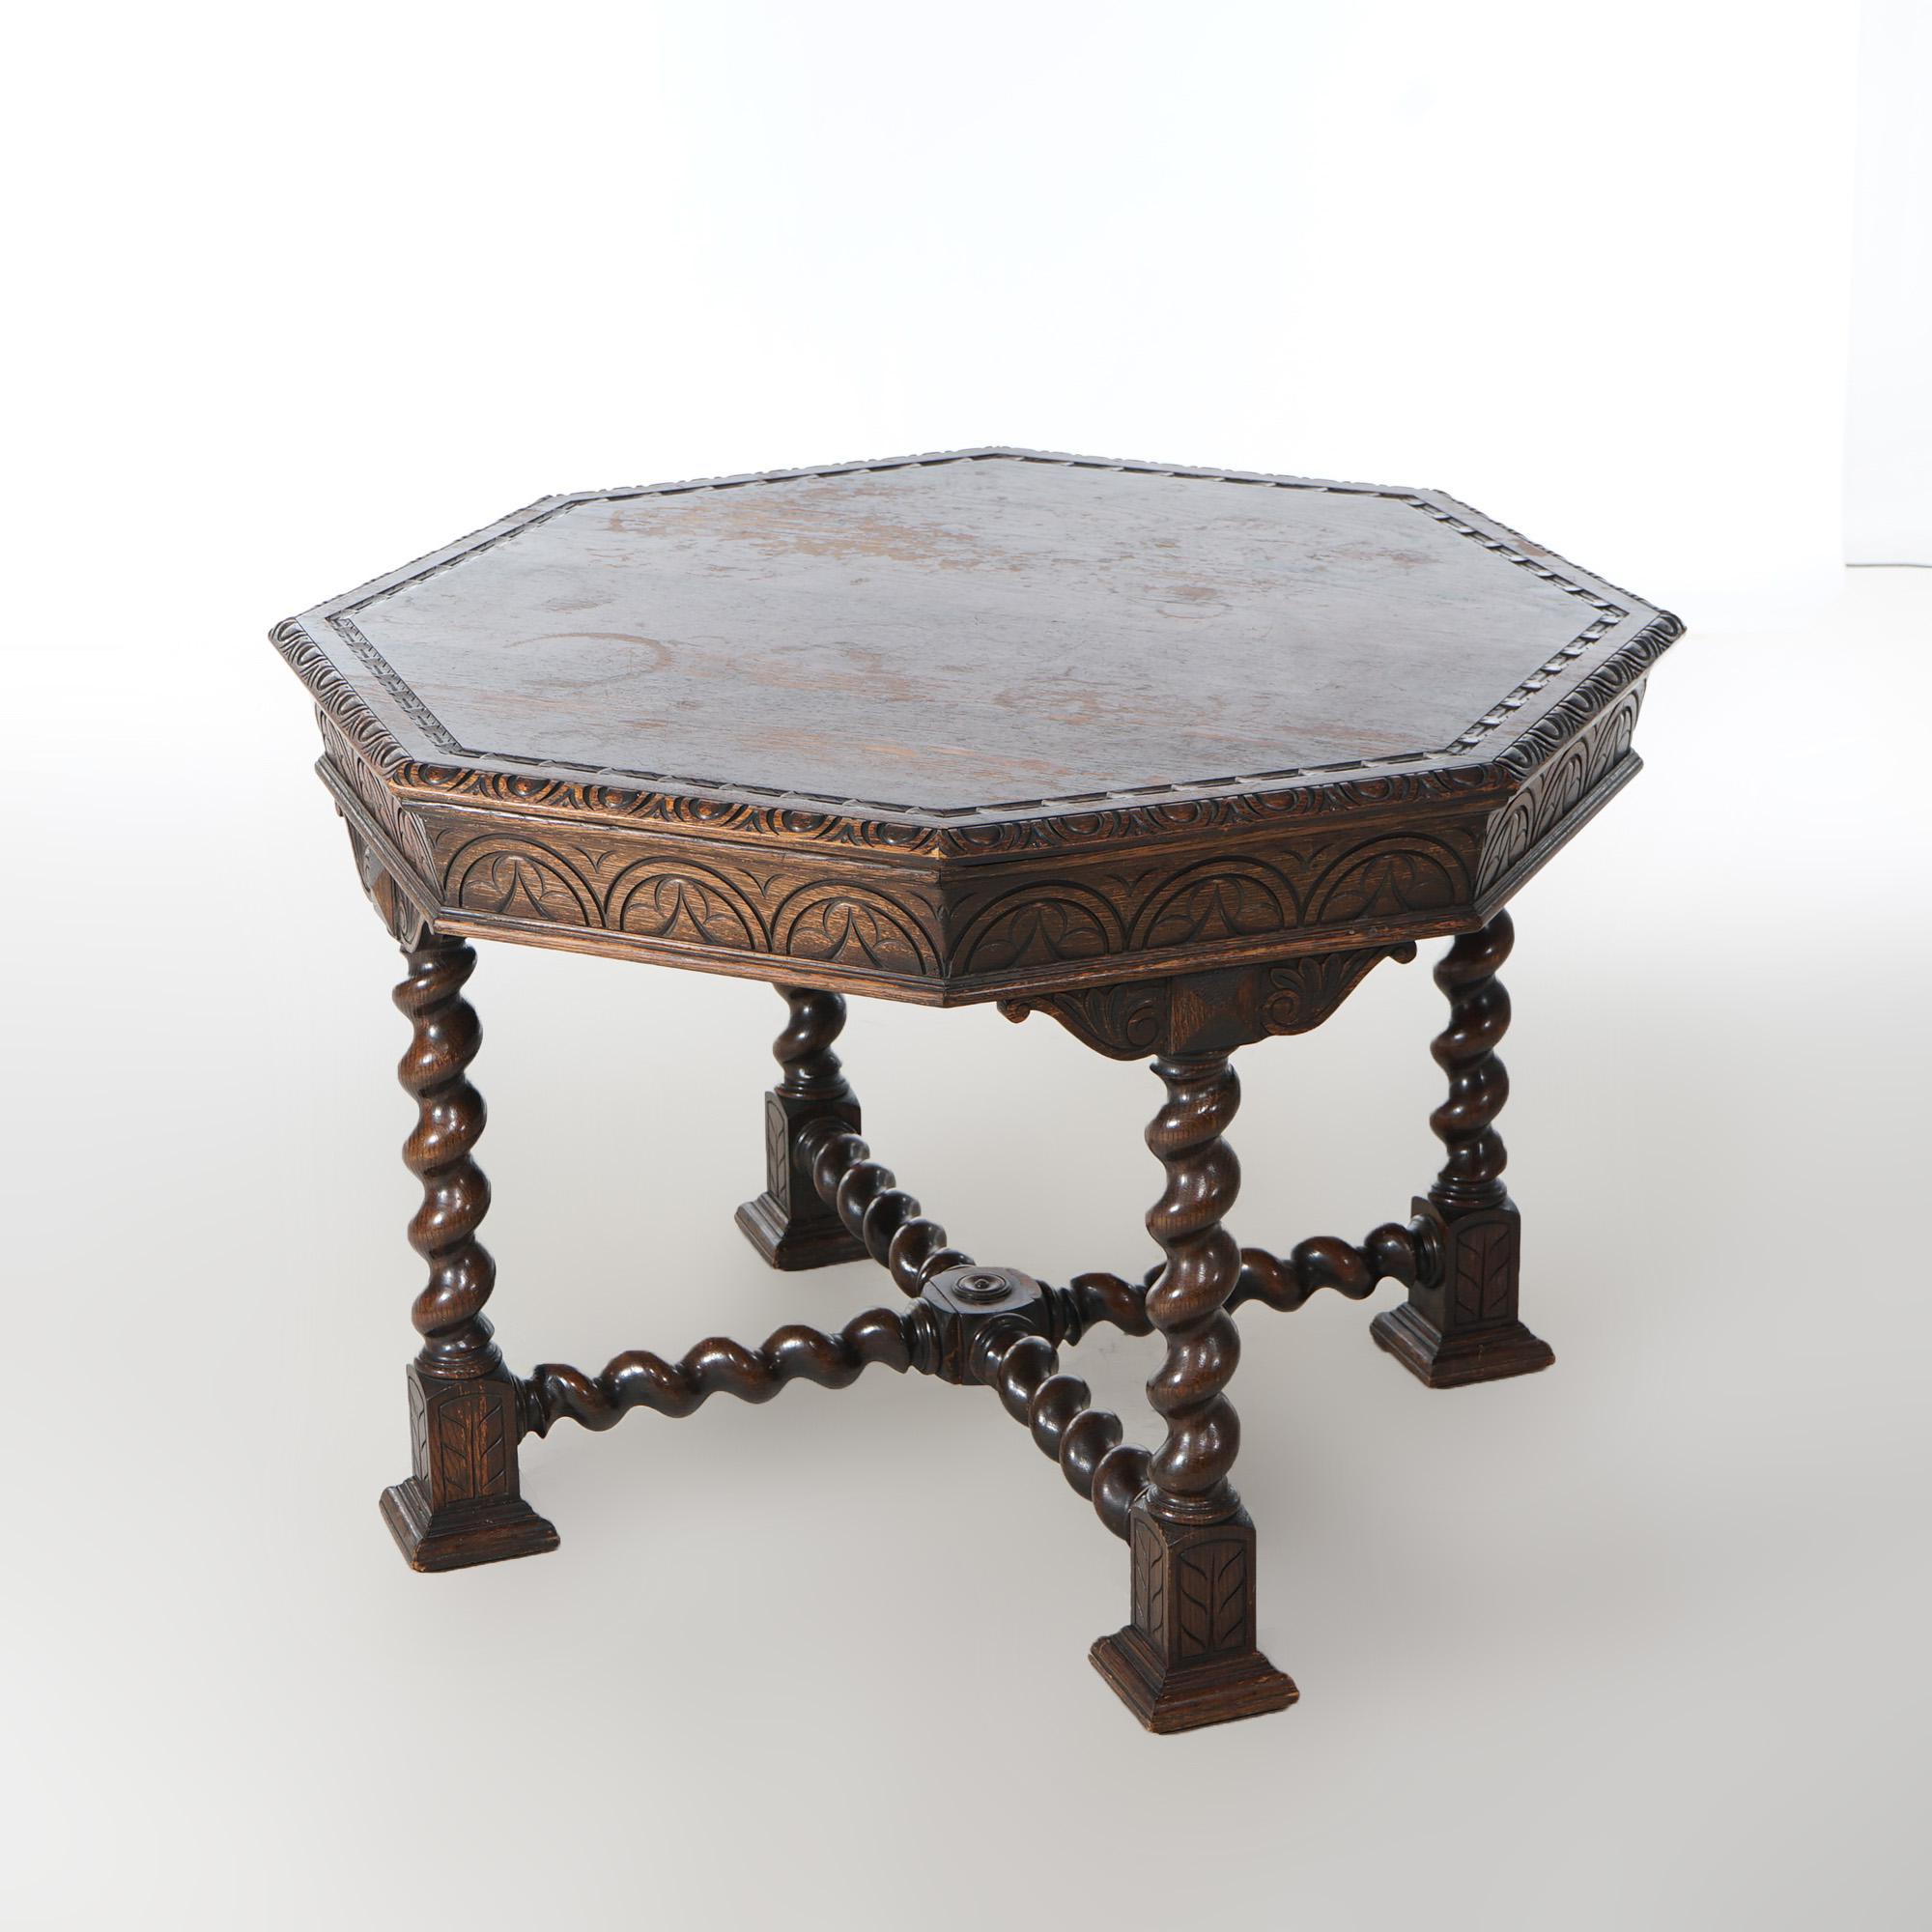 Table centrale octogonale ancienne en chêne sculpté de style édouardien, avec pieds torsadés en corde et brancards, vers 1910

Dimensions : 30.5 